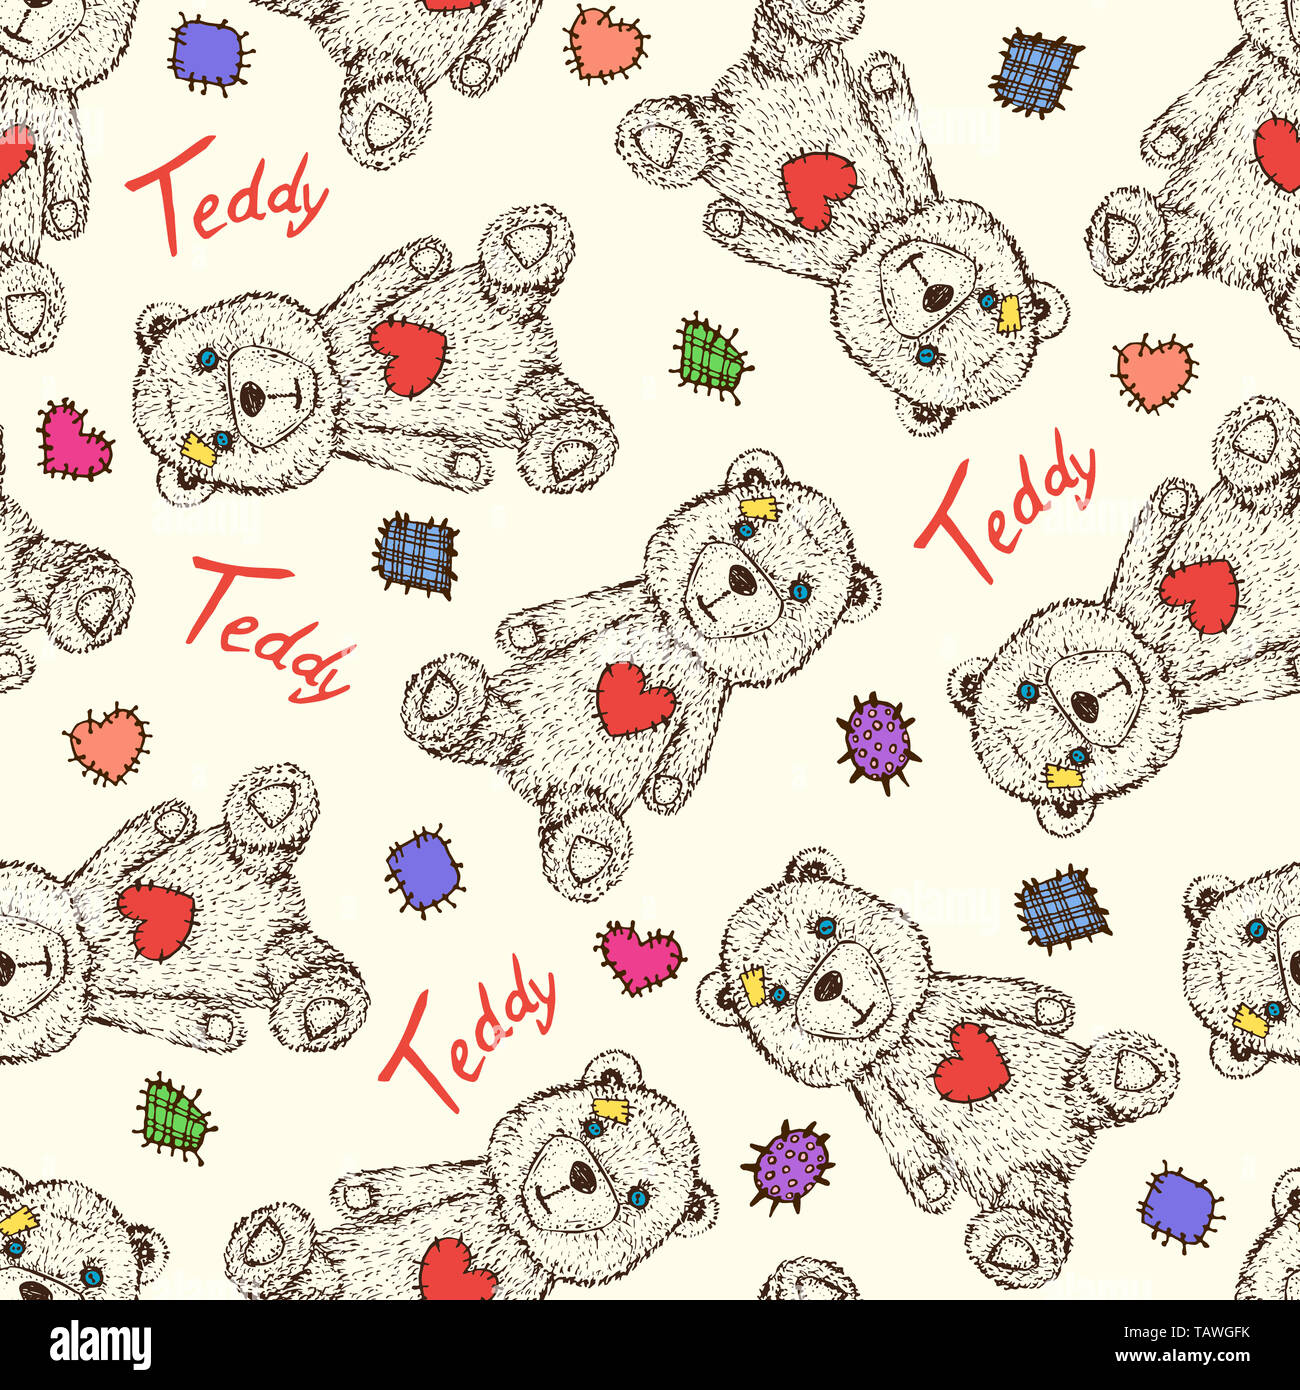 Teddy Bear mit bunten Patches und Beschriftung, Hand gezeichnet doodle  Skizze, nahtlose Muster Design auf weichem gelben Hintergrund  Stockfotografie - Alamy